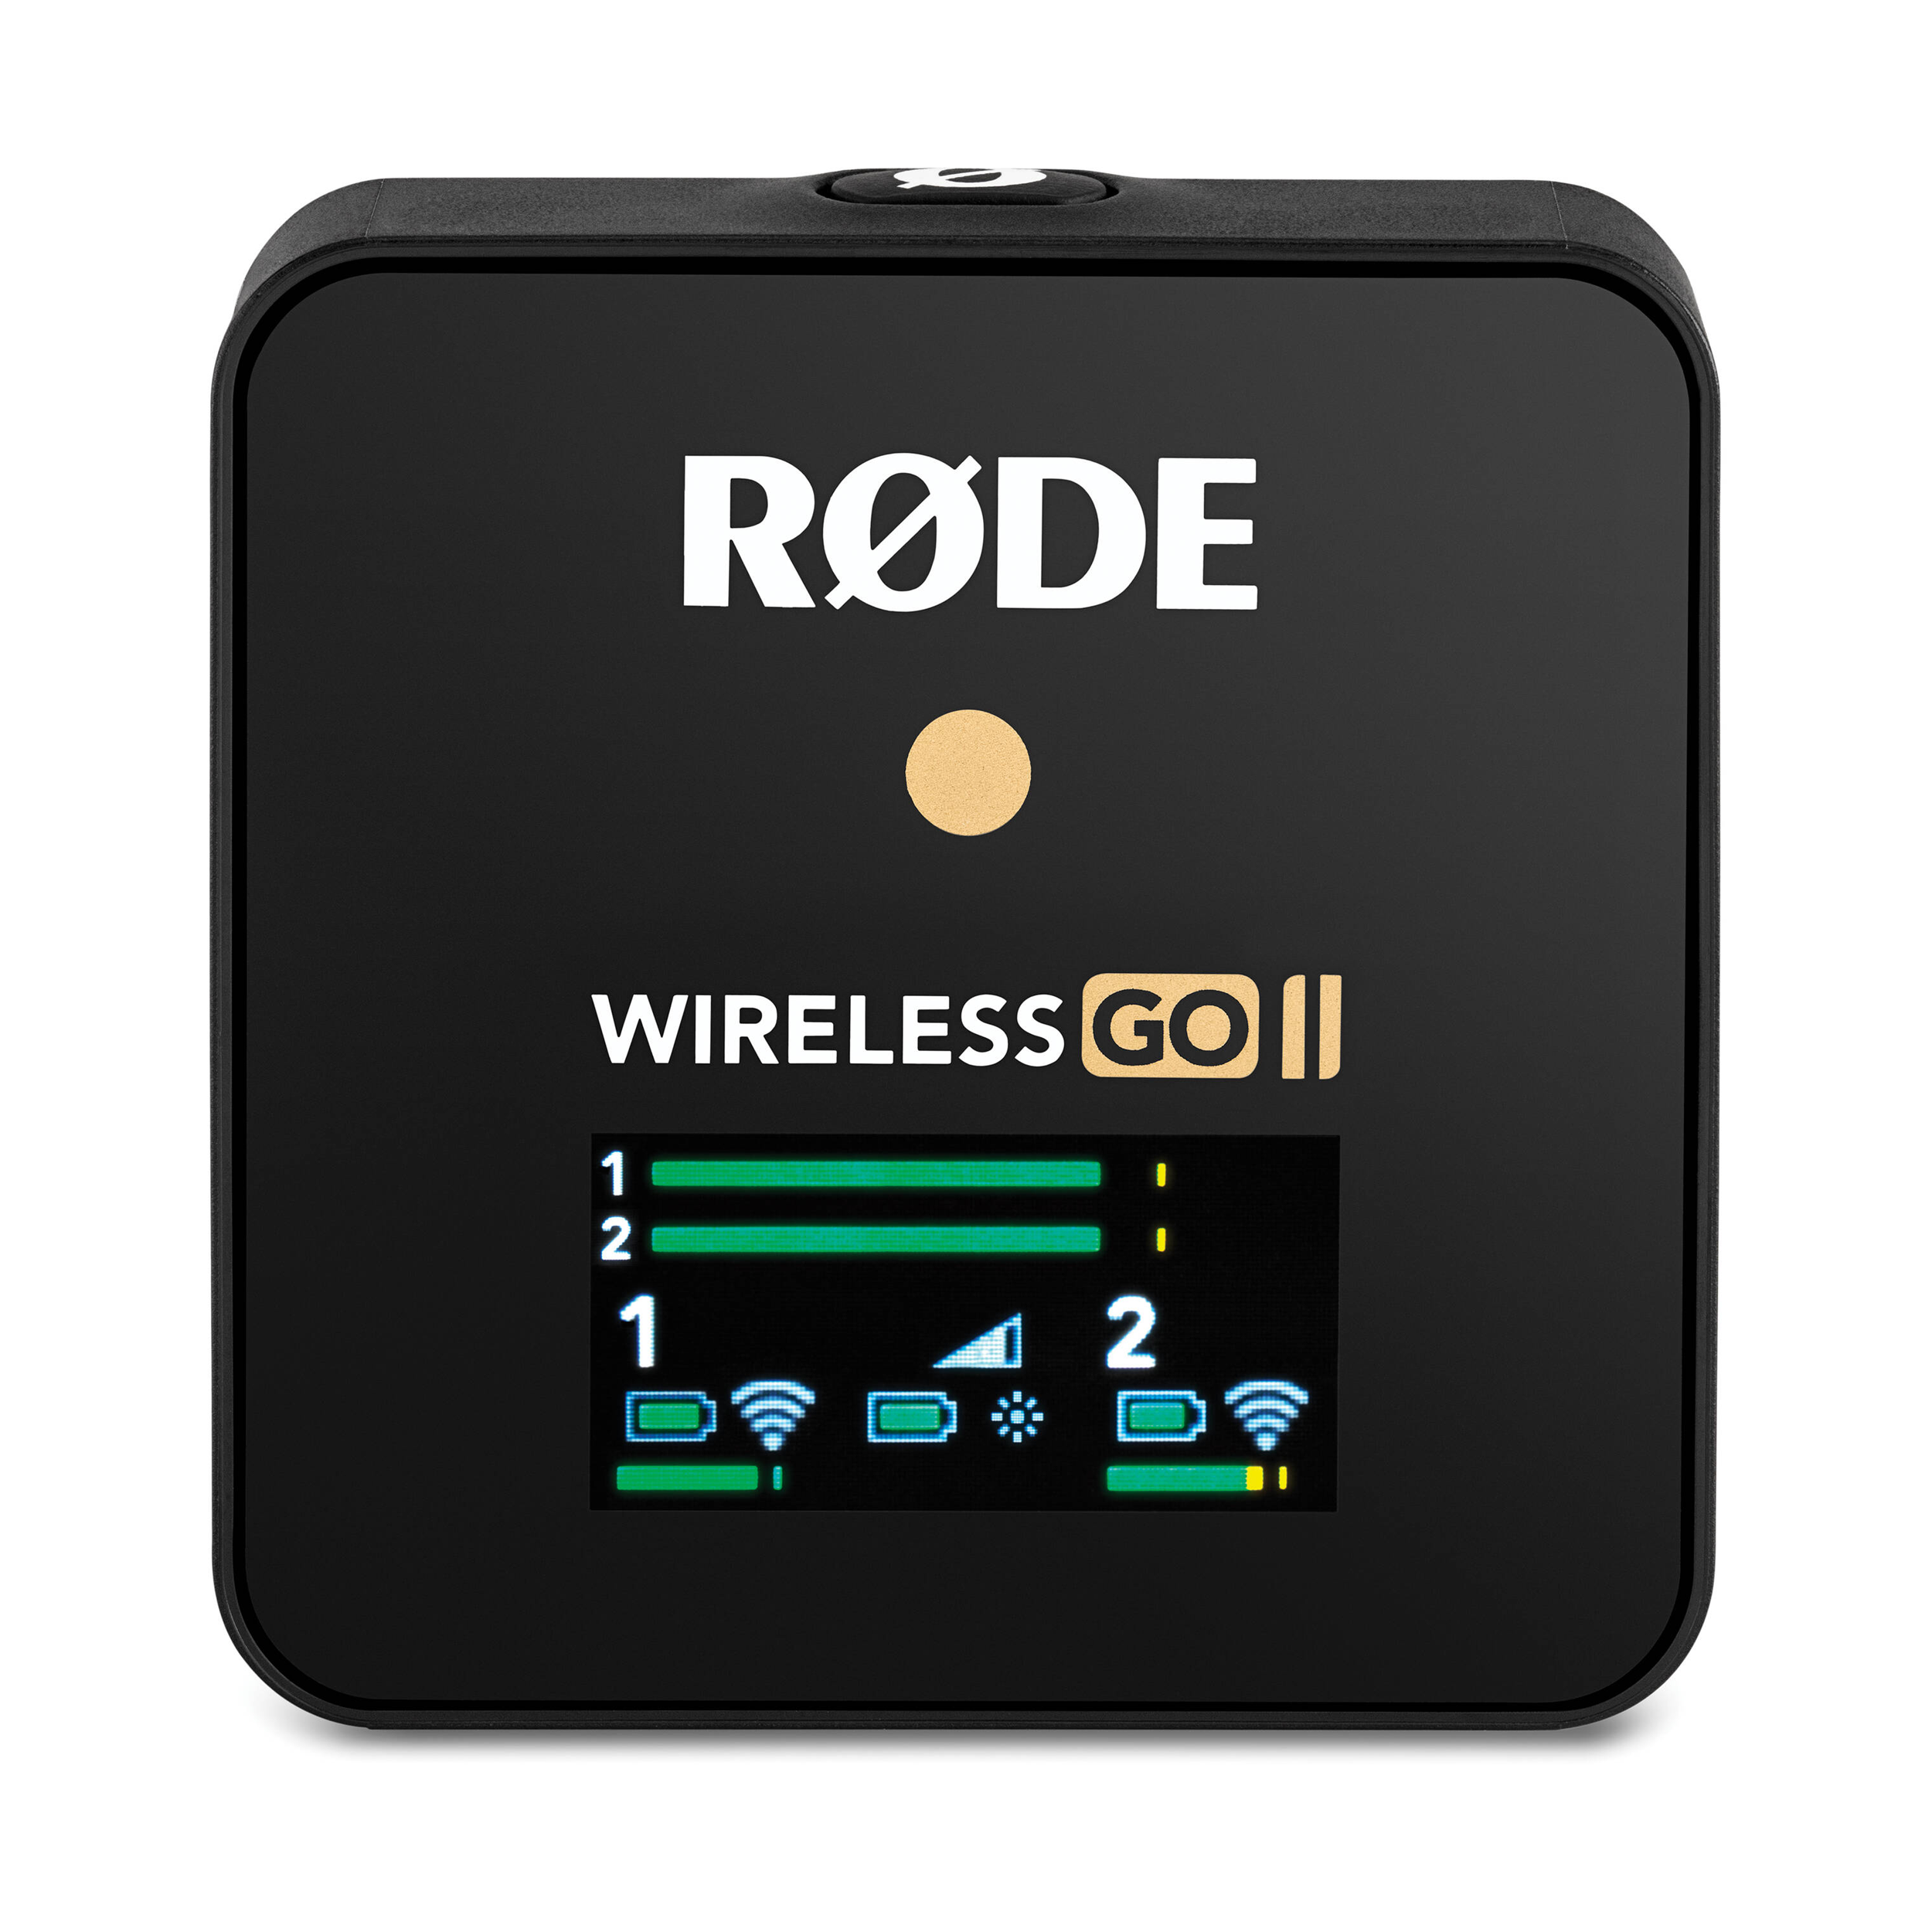 Rode Rode Wireless GO II SECTURE II SYMIQUE SYSTÈME MICHOLE / Recorder sans fil numérique (2,4 GHz, noir) - Open Boîte